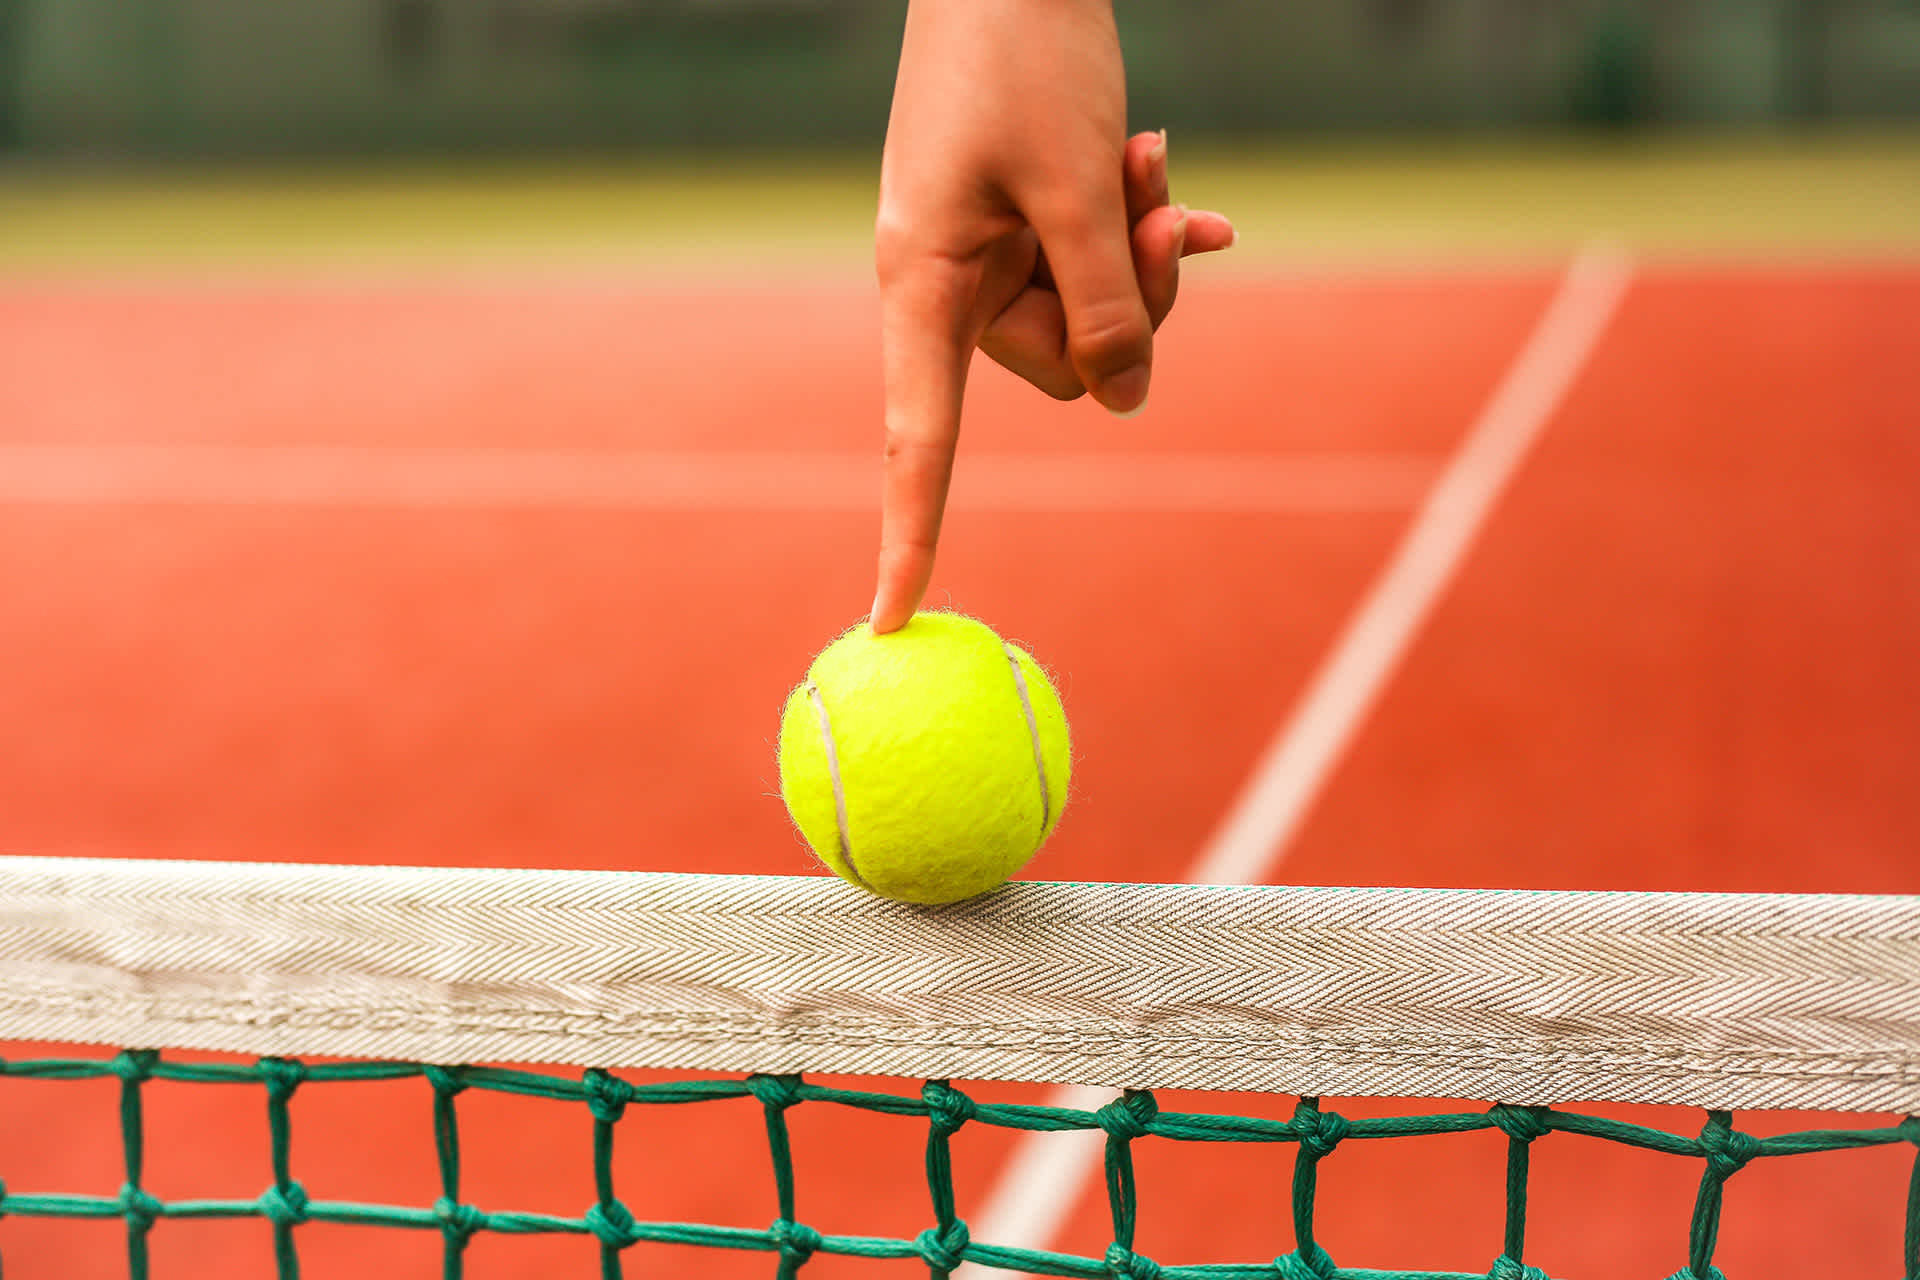 Tennis ball being balanced on a tennis net